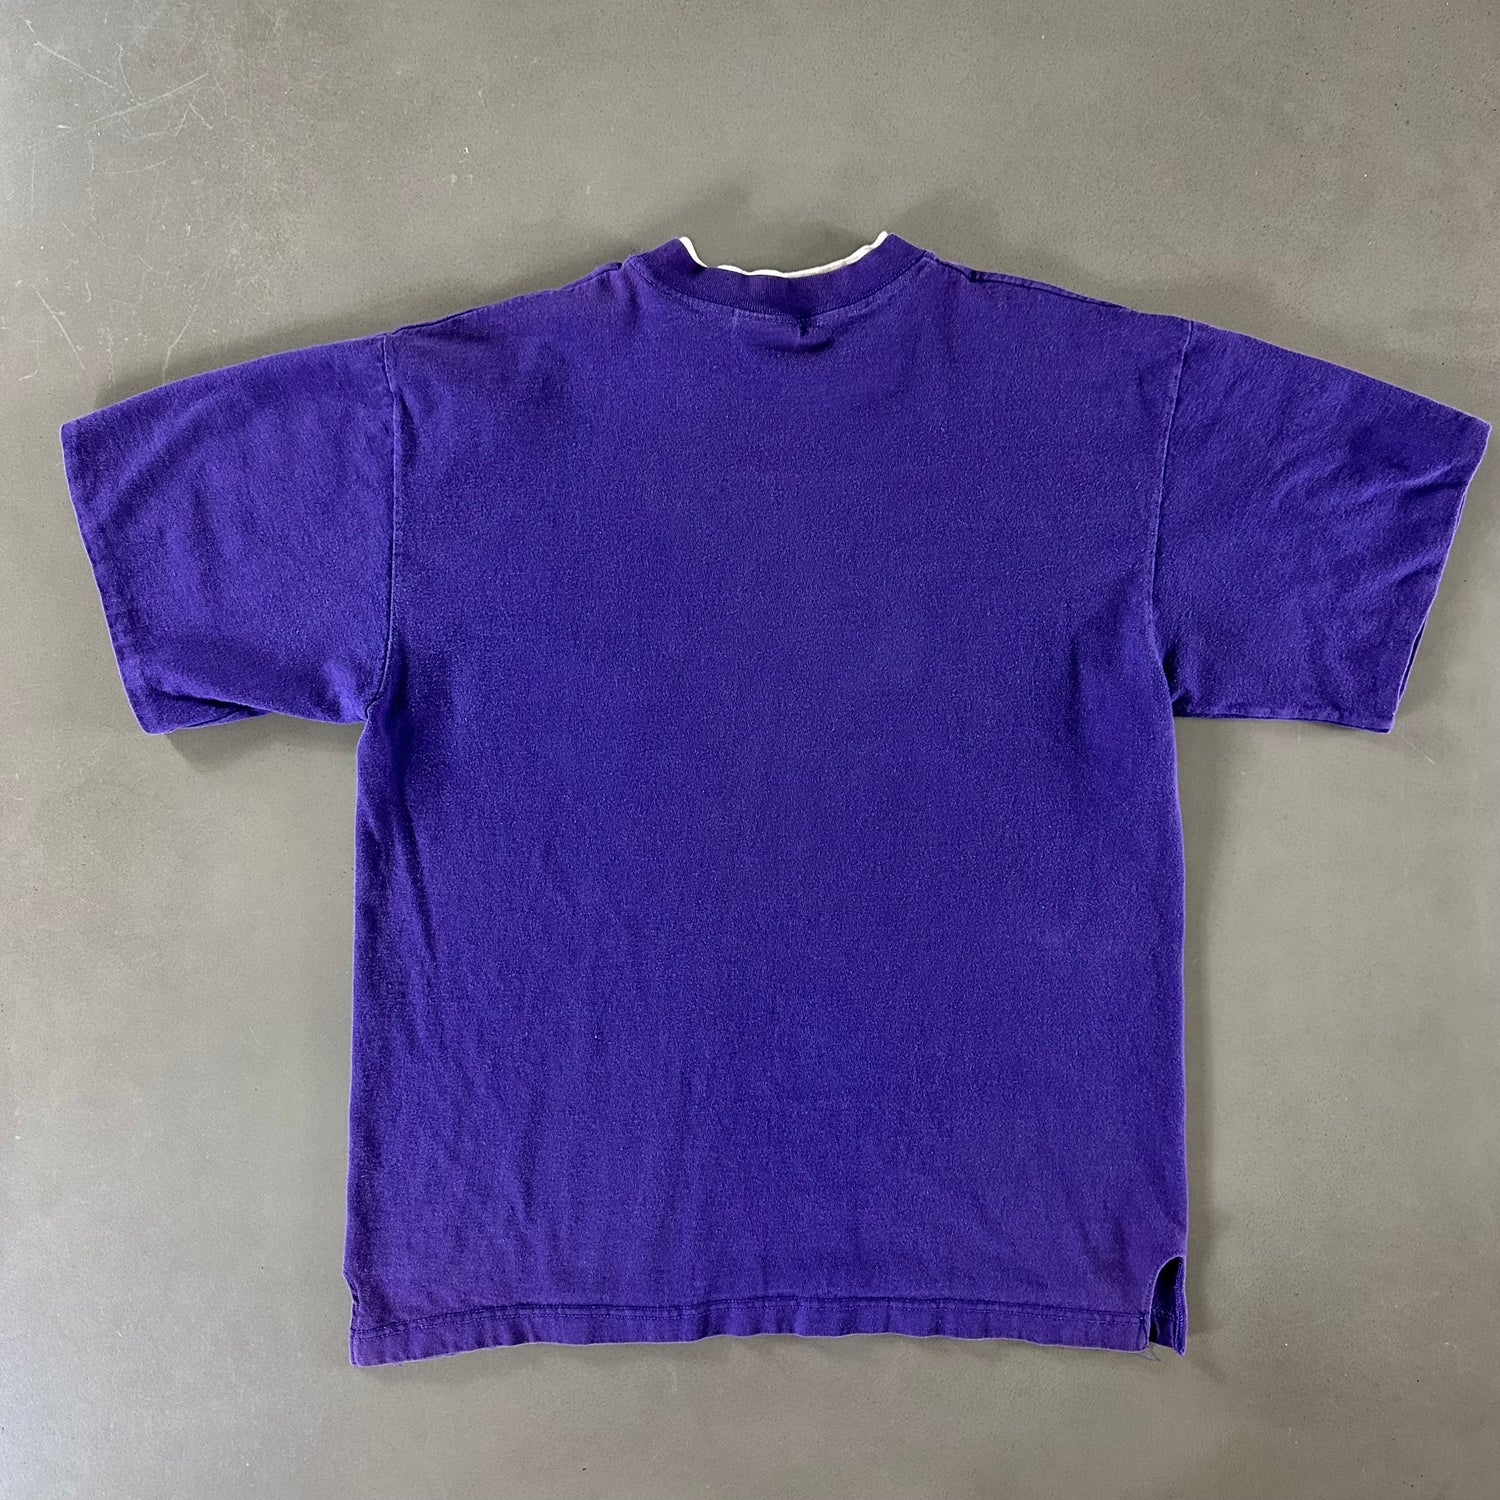 Vintage 1990s LA Roche College T-shirt size Large